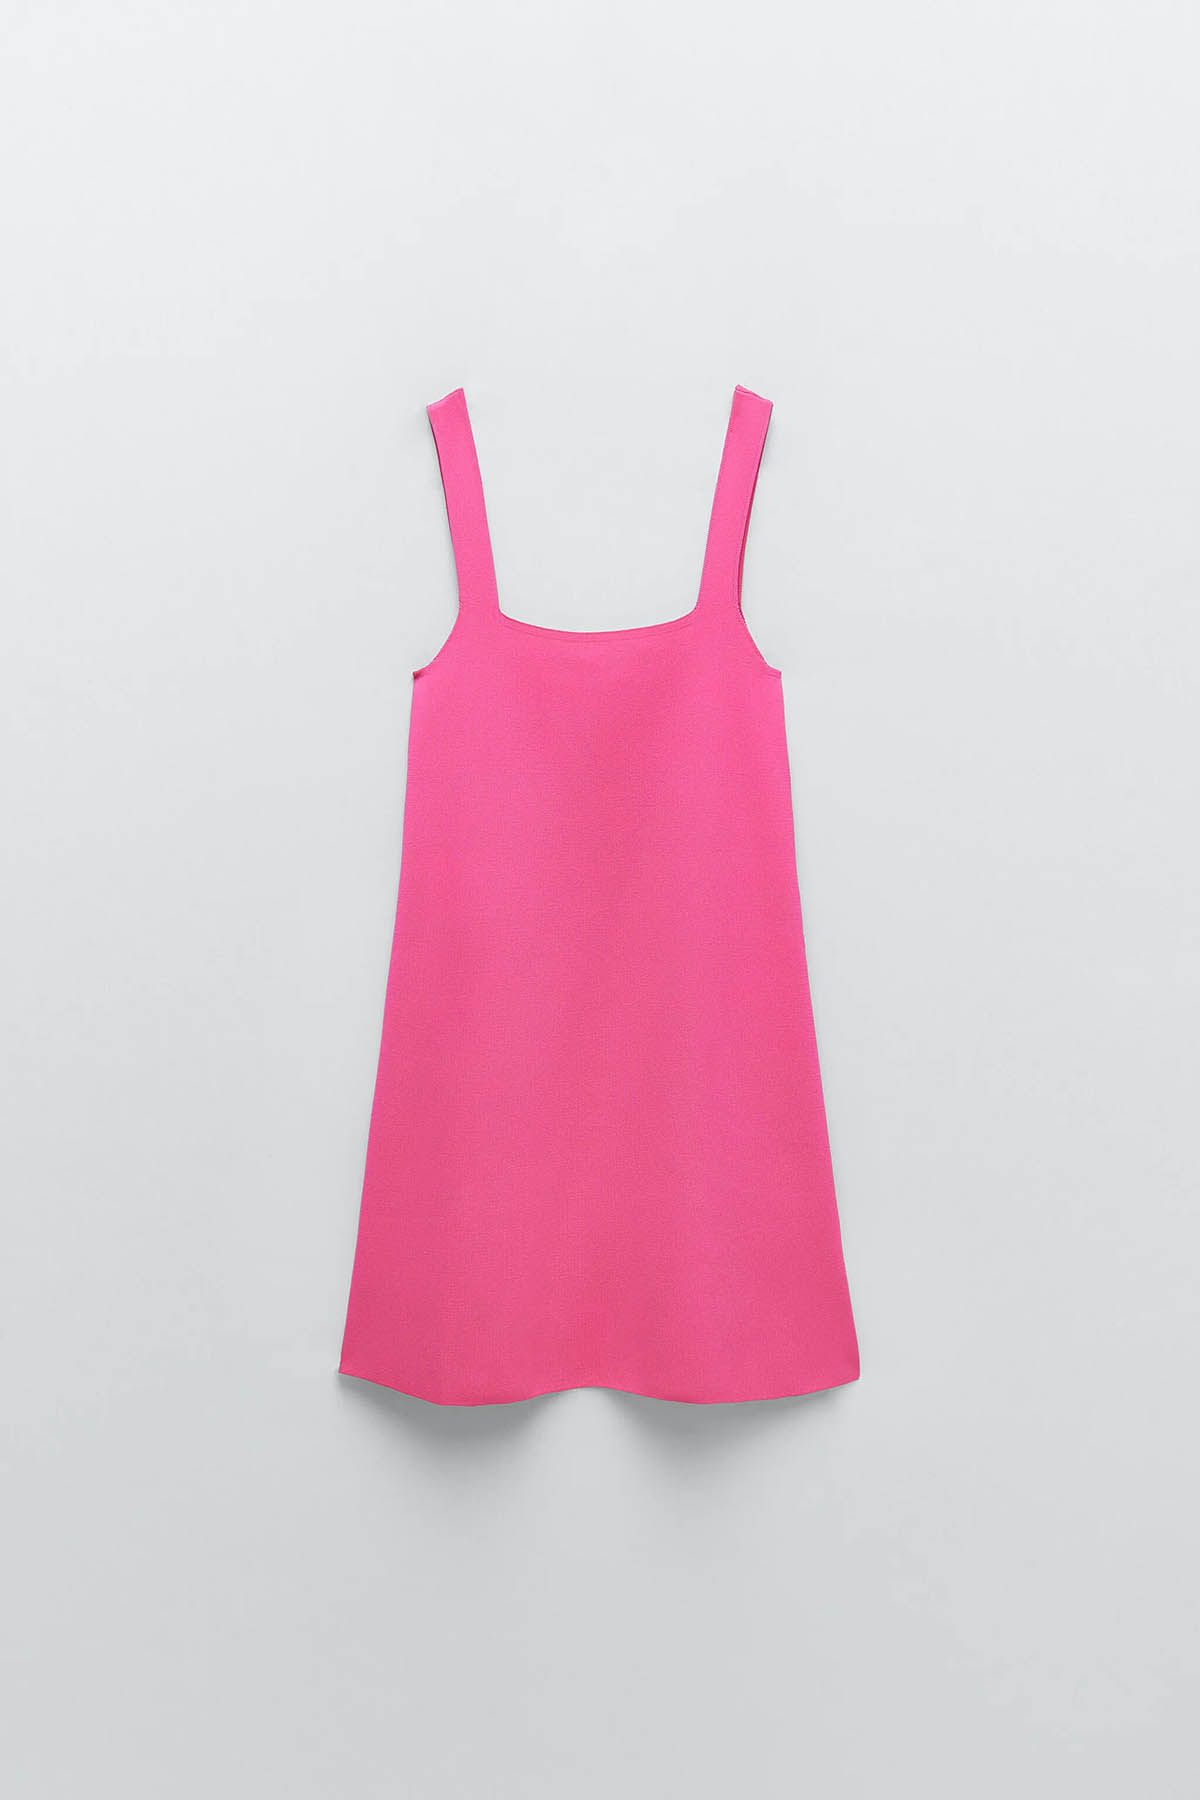 Zara tiene el vestido rosa, naranja o lila más deseado de la primavera 2021